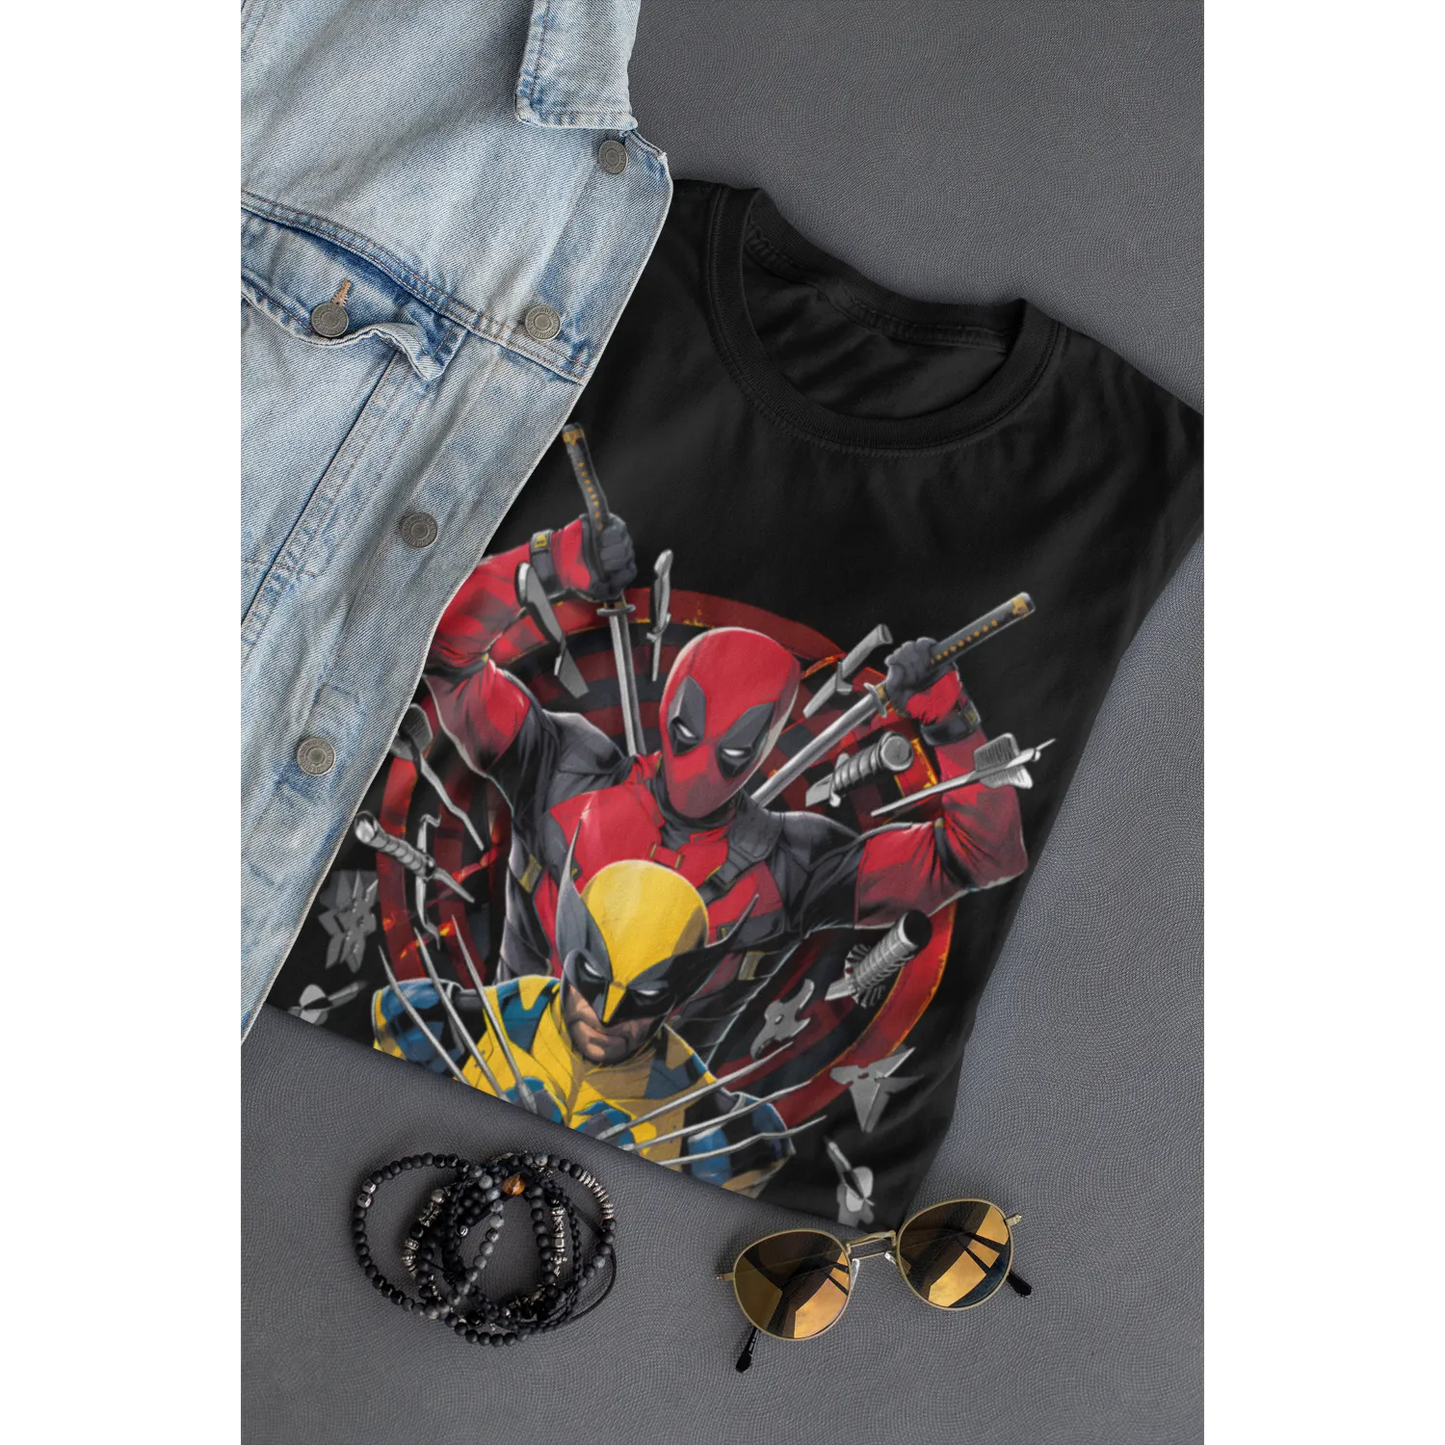 Marvel Comics Deadpool & Wolverine Weapons Action T-Shirt - Men's/Unisex